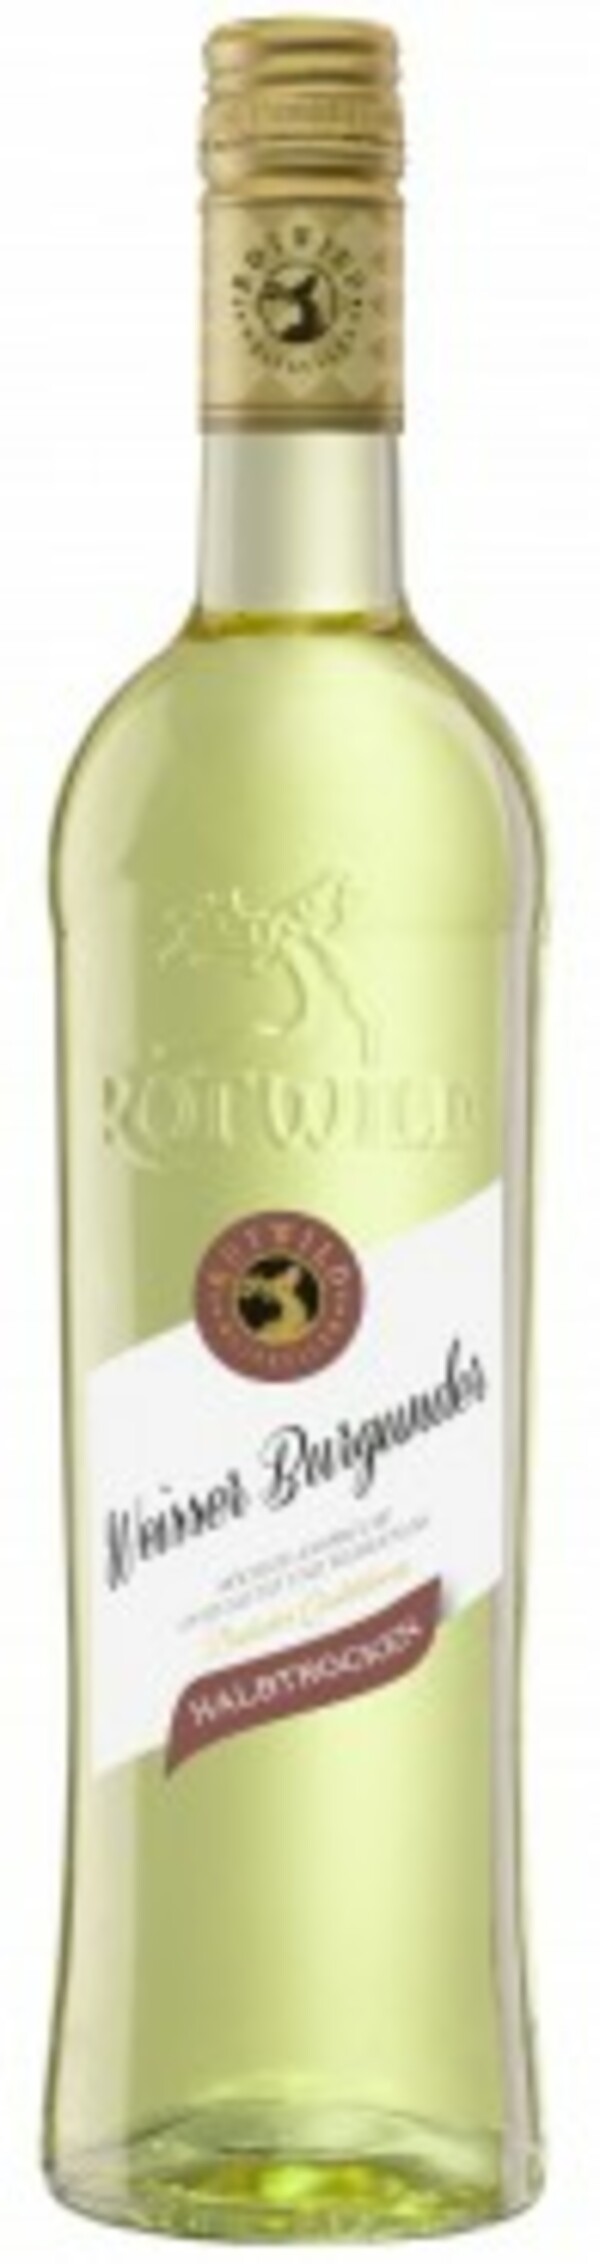 Rotwild Weißwein Weißer Burgunder 1x 0,75 Liter, halbtrocken von Globus  Baumarkt für 3,99 € ansehen!